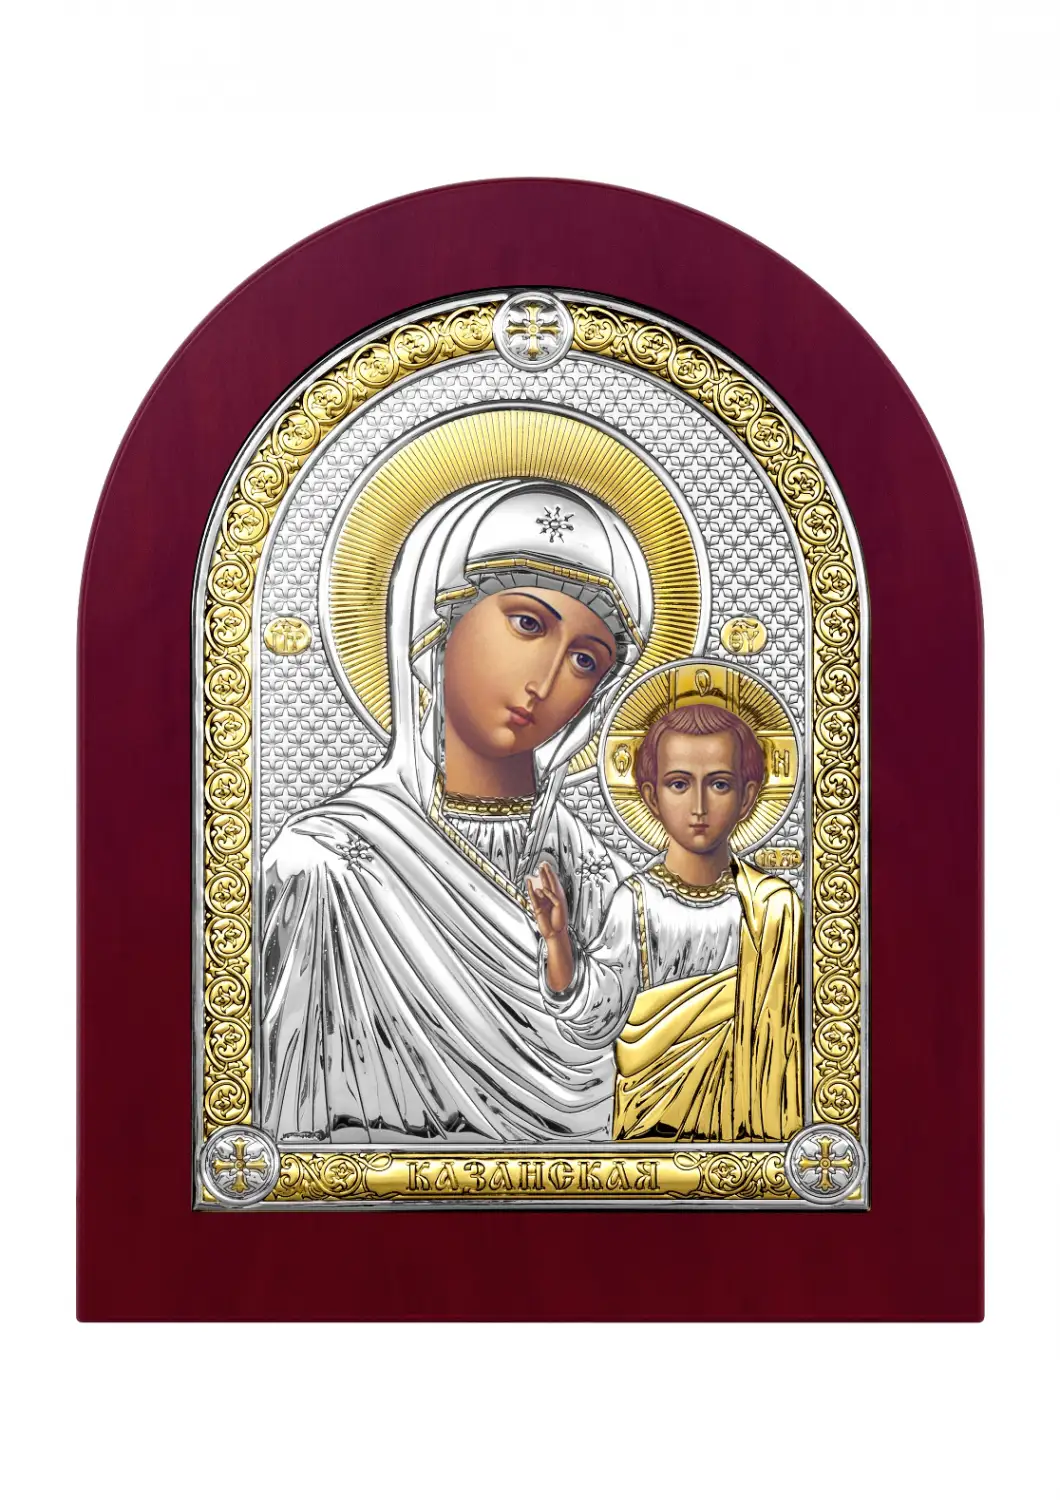 Икона Казанская Божья матерь (22,1*26,9) цена и фото